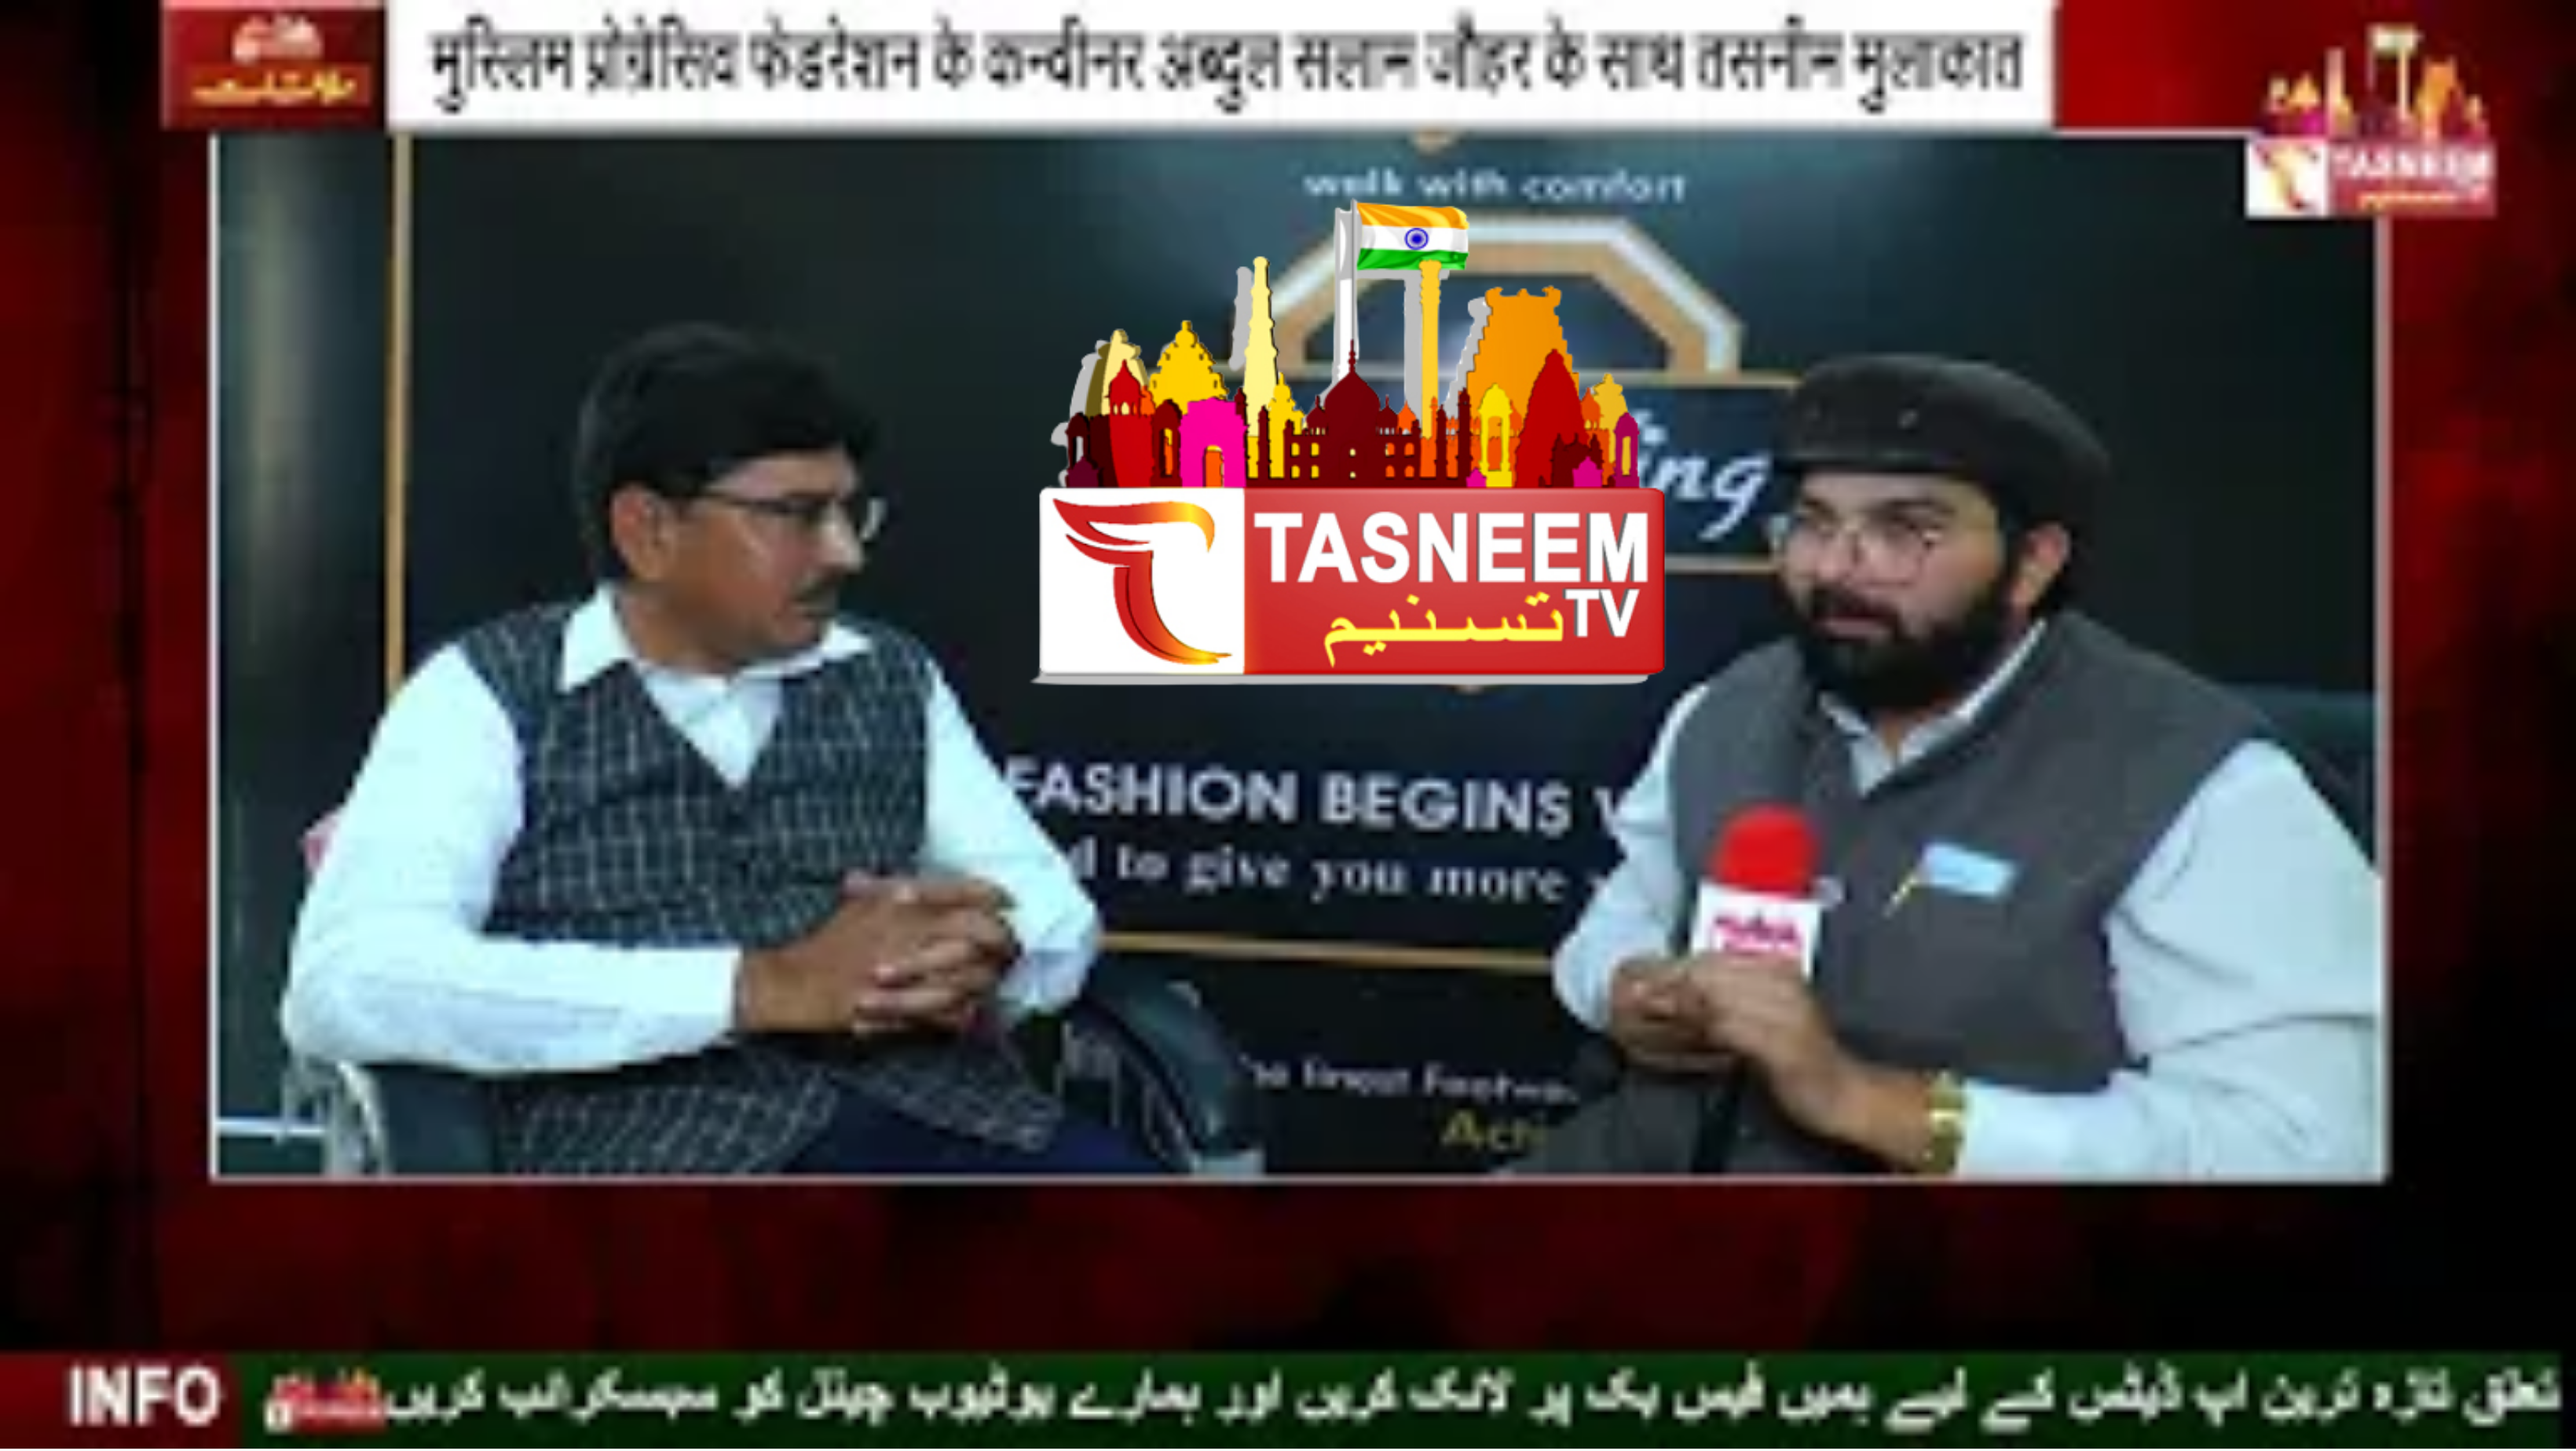 मुस्लिम प्रोग्रेसिव फ़ेडरेशन के कन्वीनर अब्दुल सलाम जौहर के साथ तसनीम मुलाक़ात || Tasneem TV ||